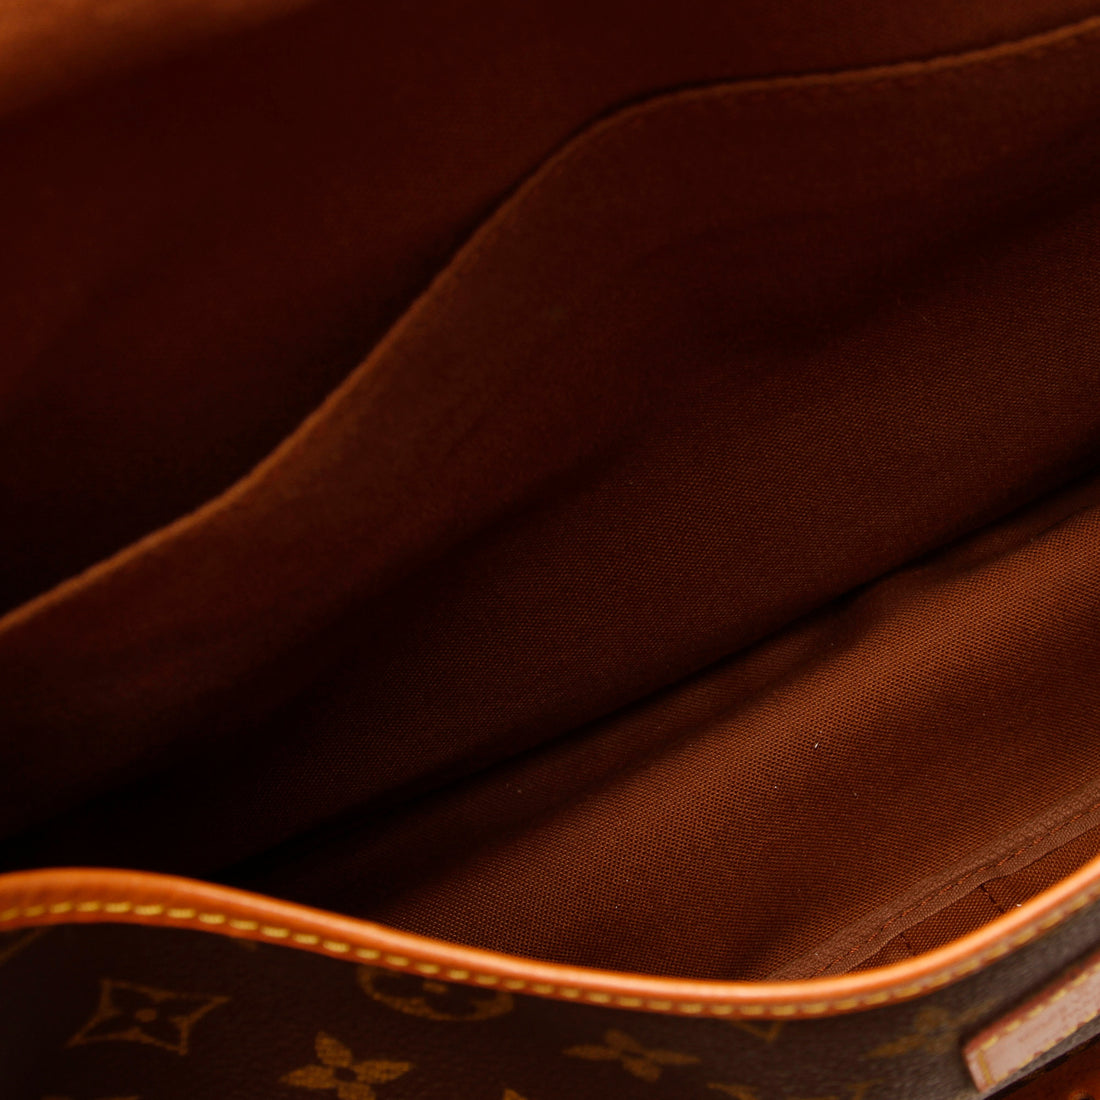 Louis Vuitton Satchel - 39 For Sale on 1stDibs  louis vuitton satchel purse,  lv satchel bag, louis vuitton satchels